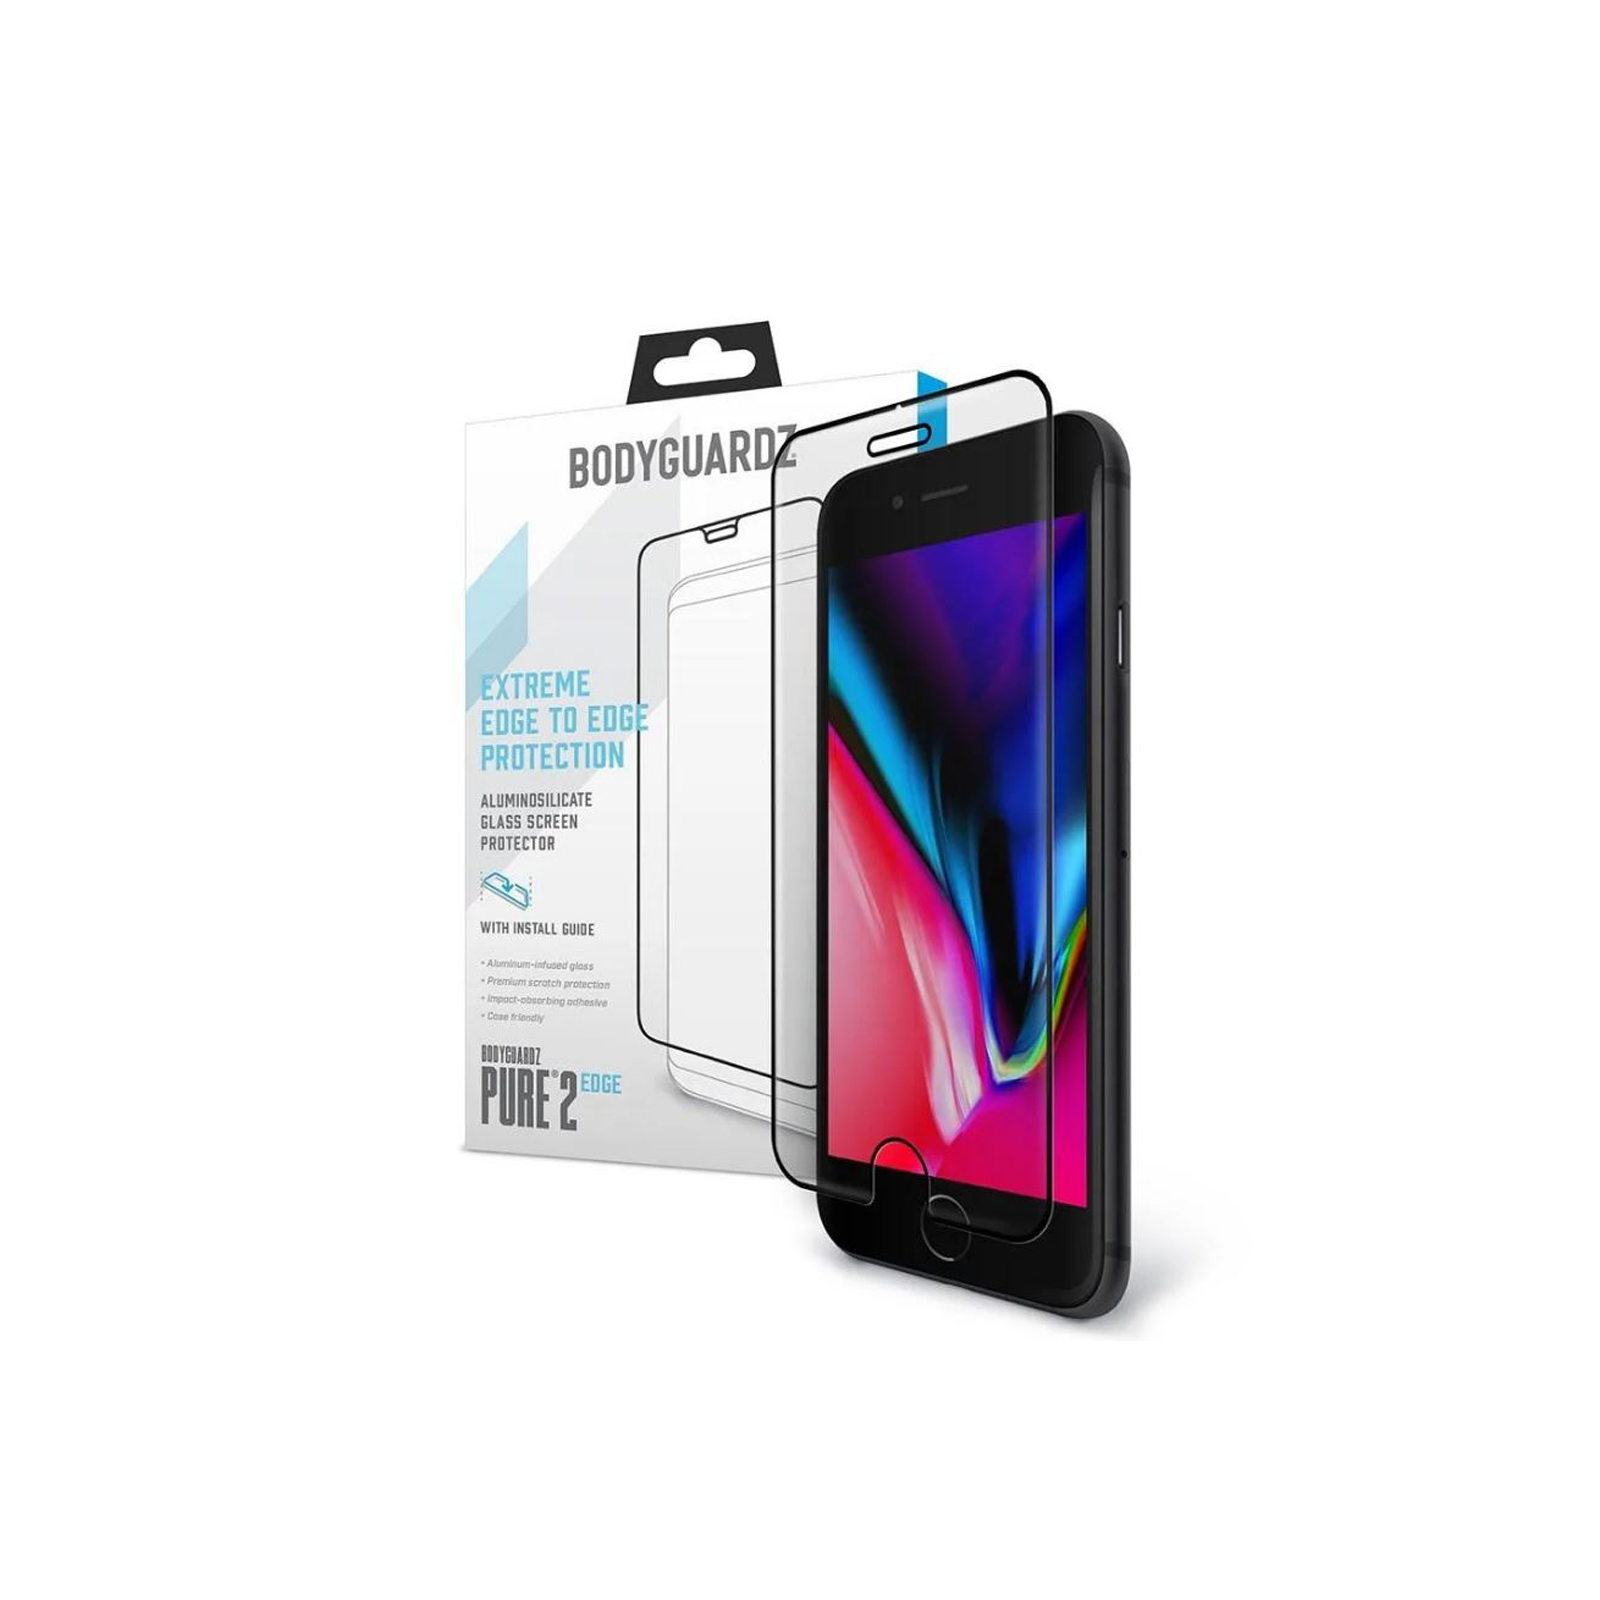 BodyGuardz Sceenpure Glass iPhone 6+/6s+ Screen Protector - Brand New